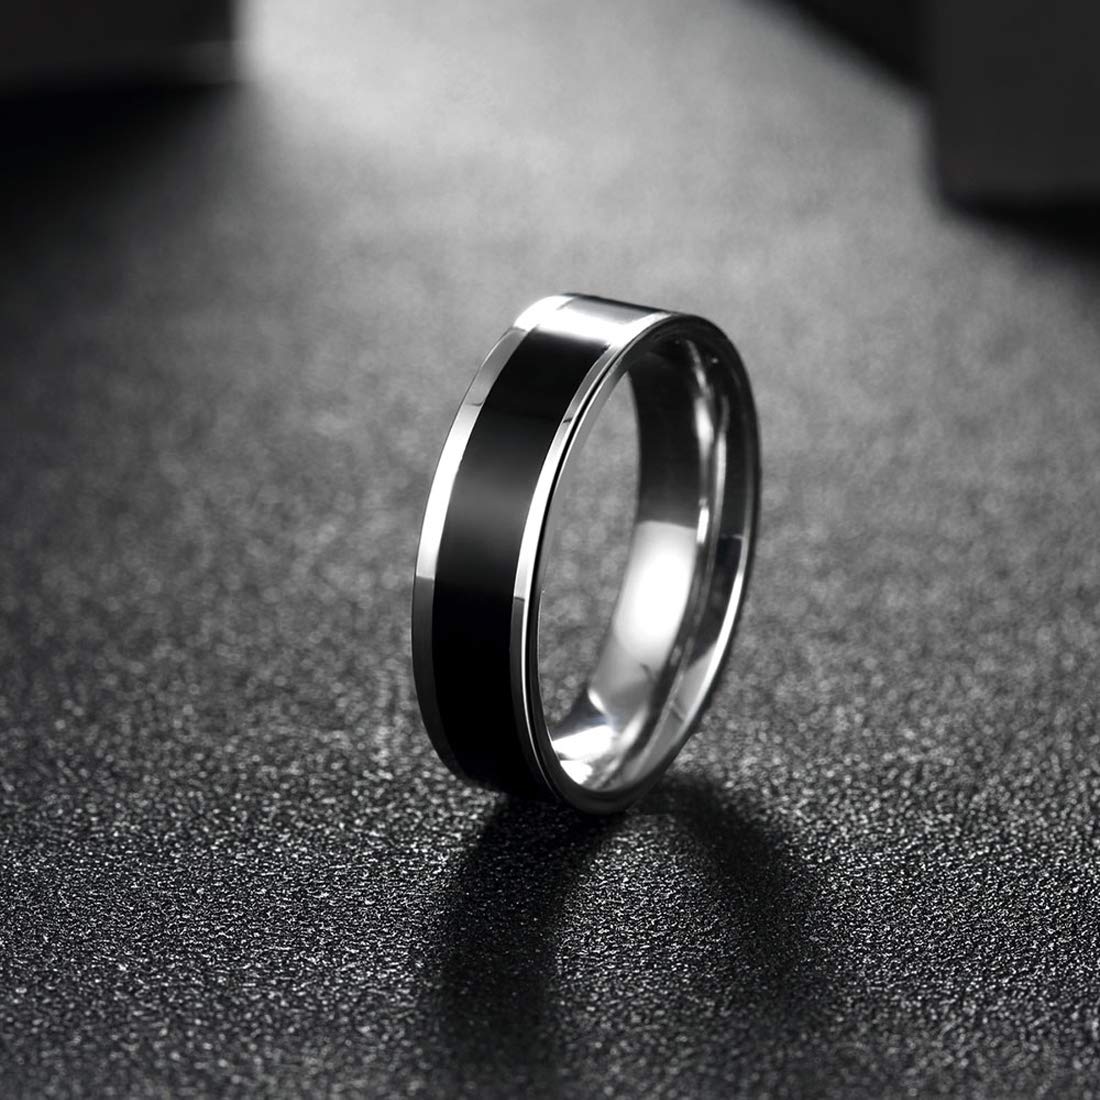 Street Style | Rings for men, Cool rings for men, Men's rings